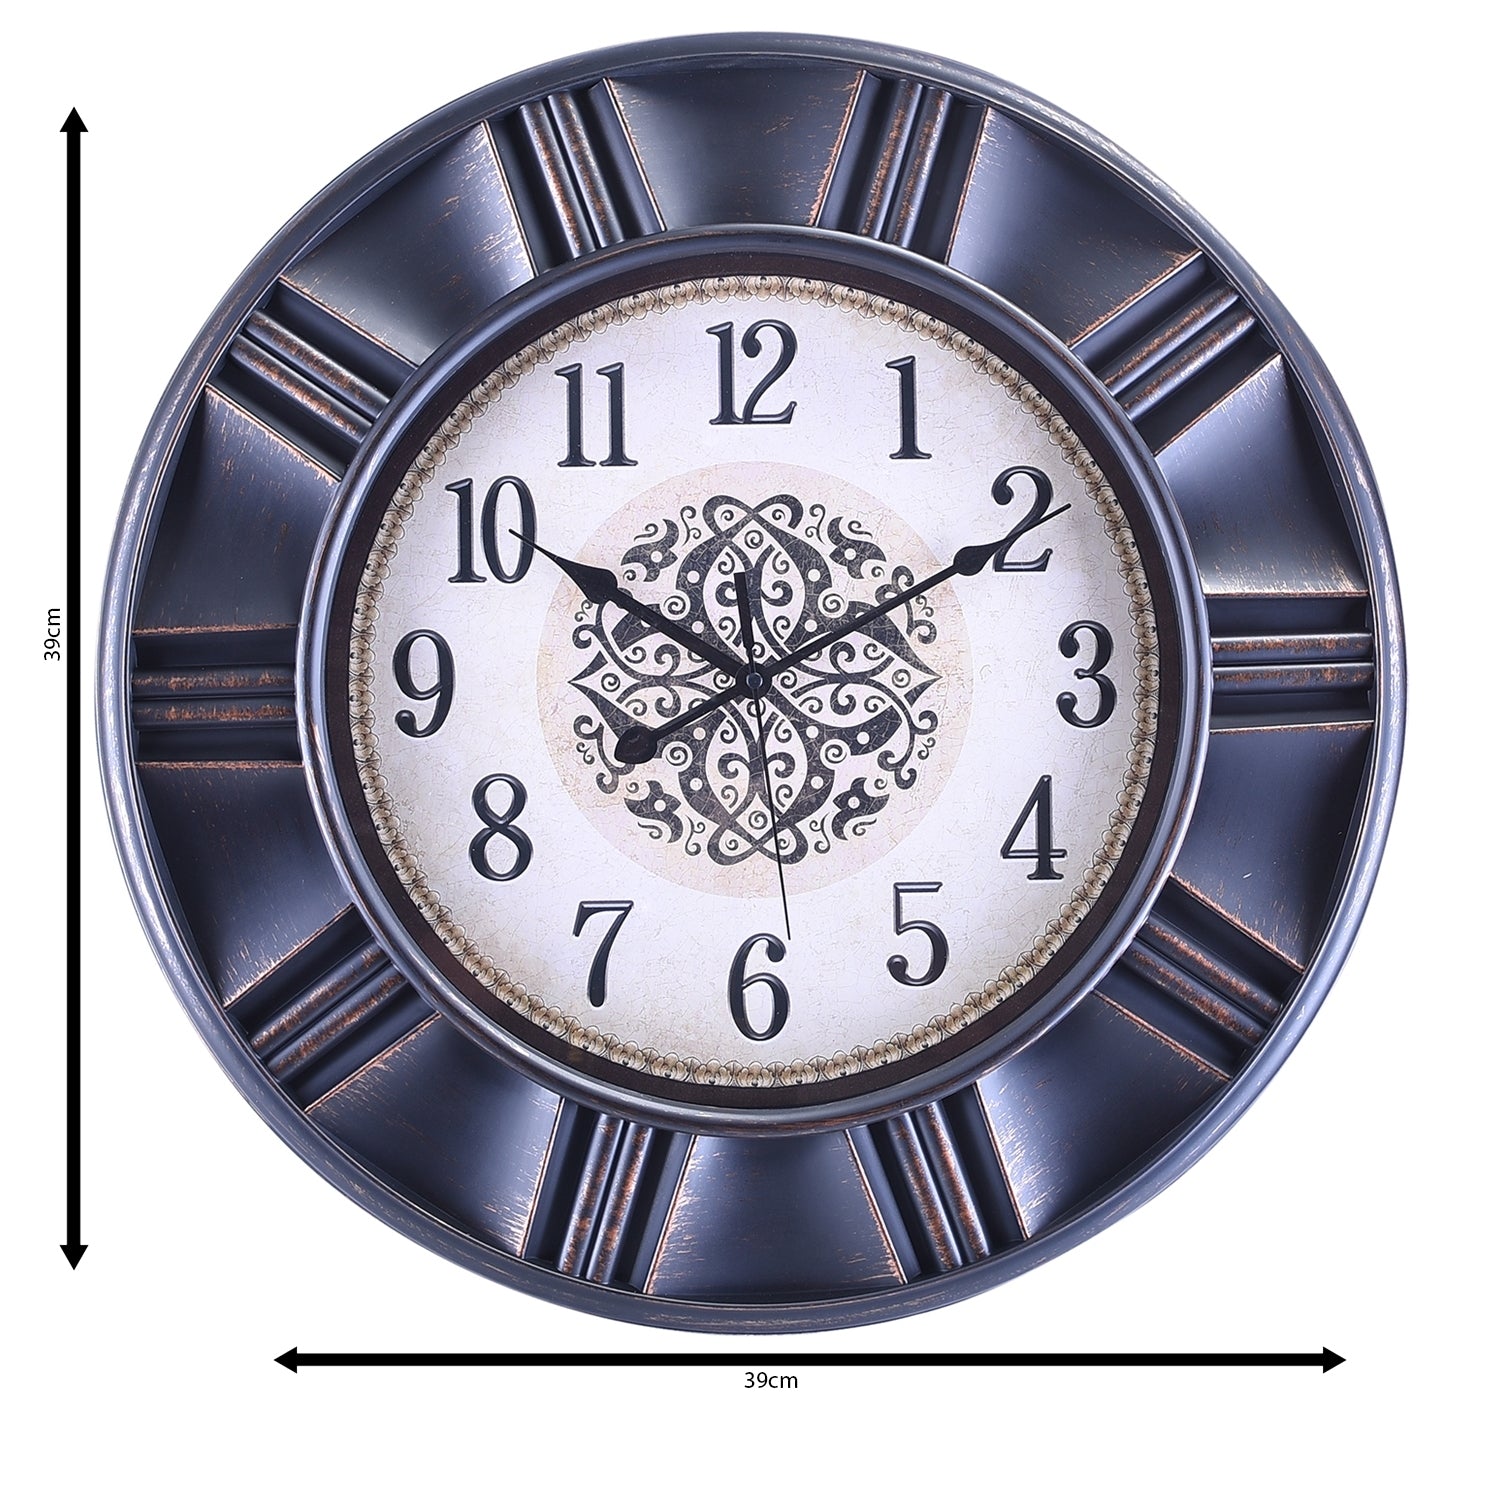 Premium Antique Design Analog Wall Clock 25